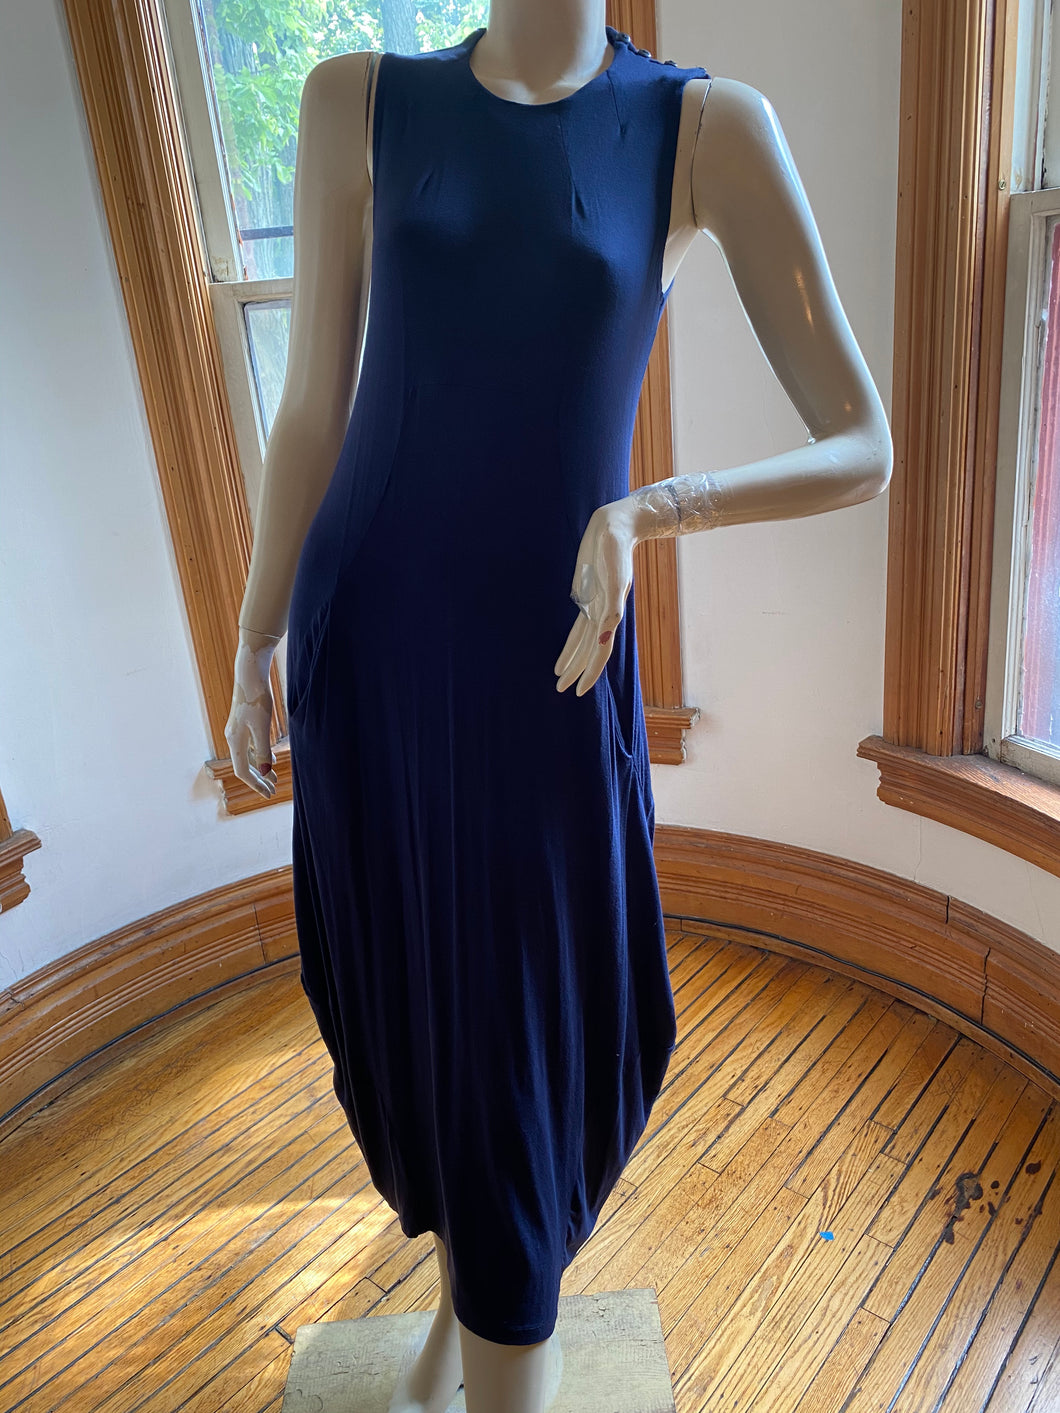 Karen Klein San Francisco Blue Sleeveless Knit Sculptural Maxi Dress, size M